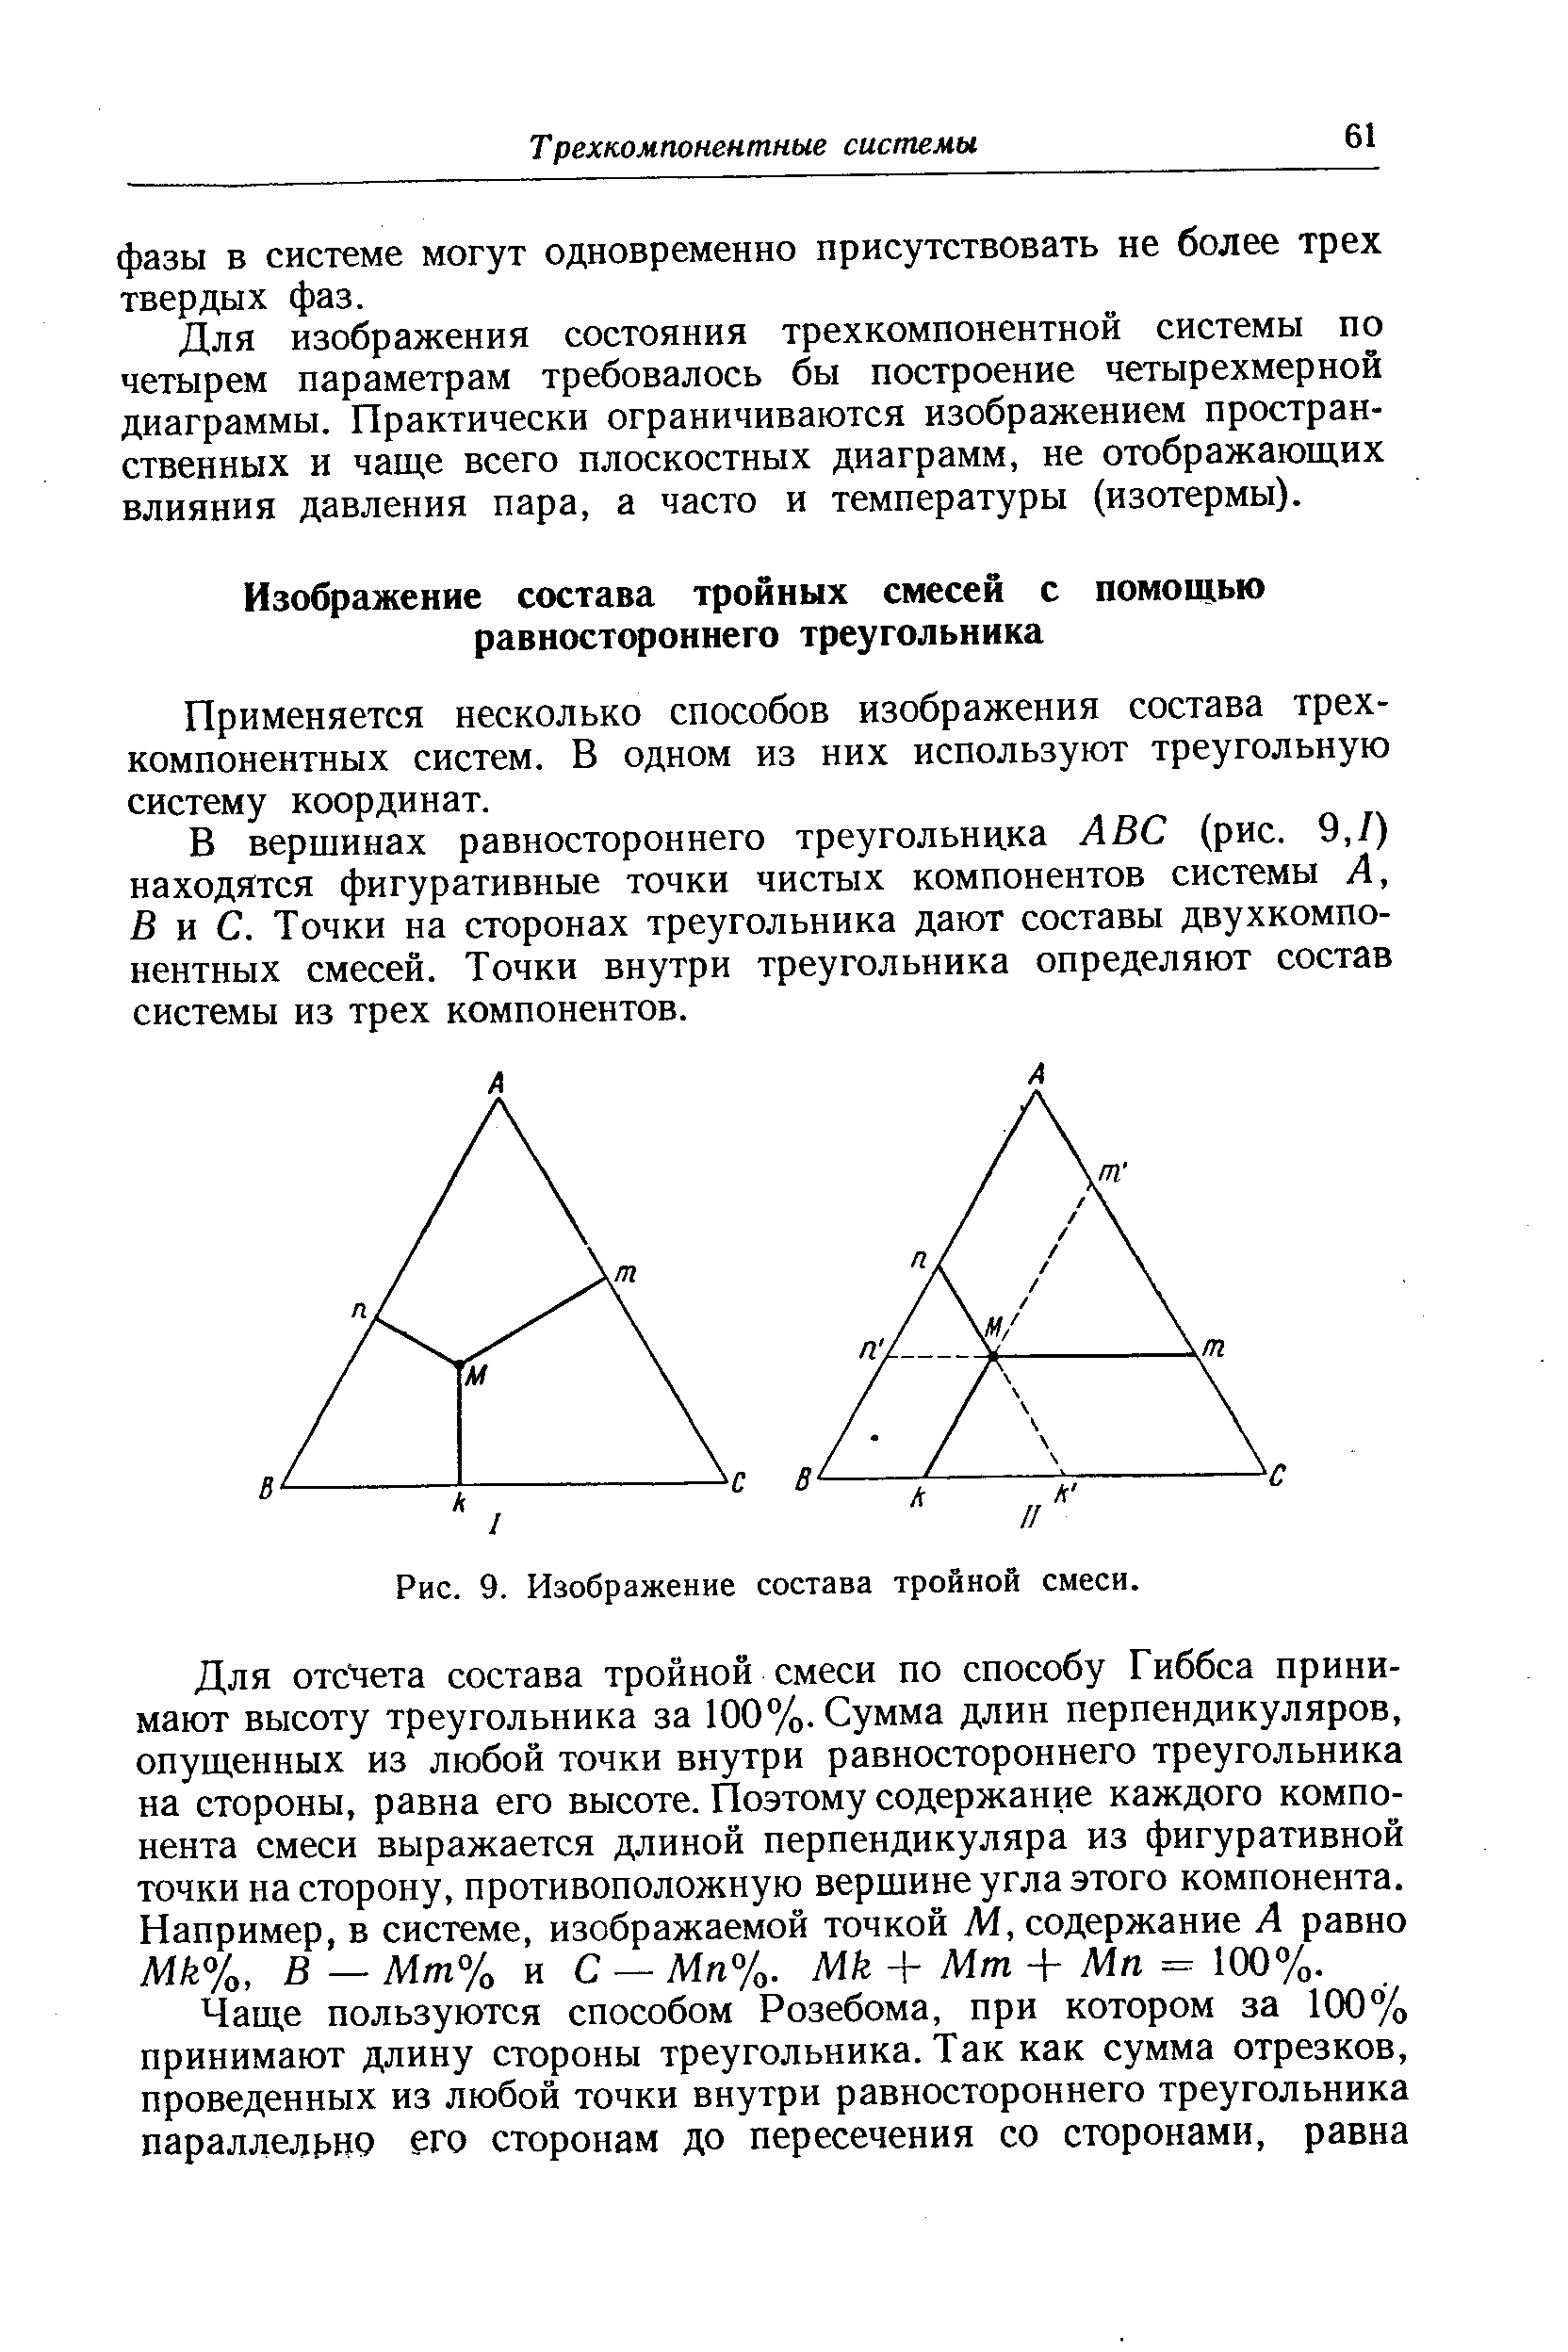 Применяется несколько способов изображения состава трехкомпонентных систем. В одном из них используют треугольную систему координат.